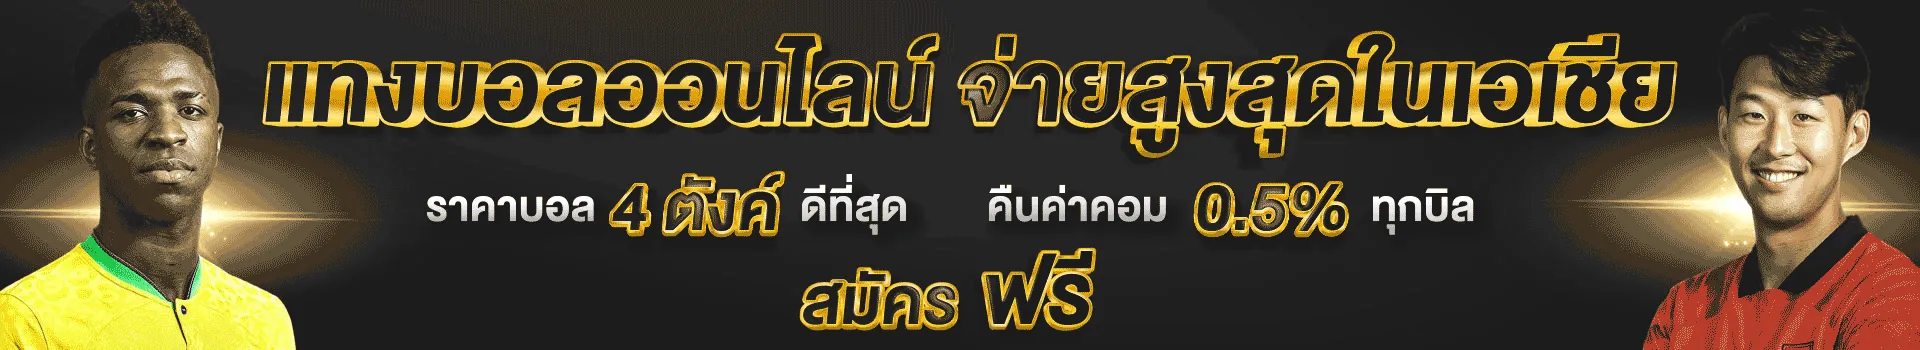 1.2.แทงบอลออนไลน์จ่ายสูงสุดในไทย(1920X350)_webP